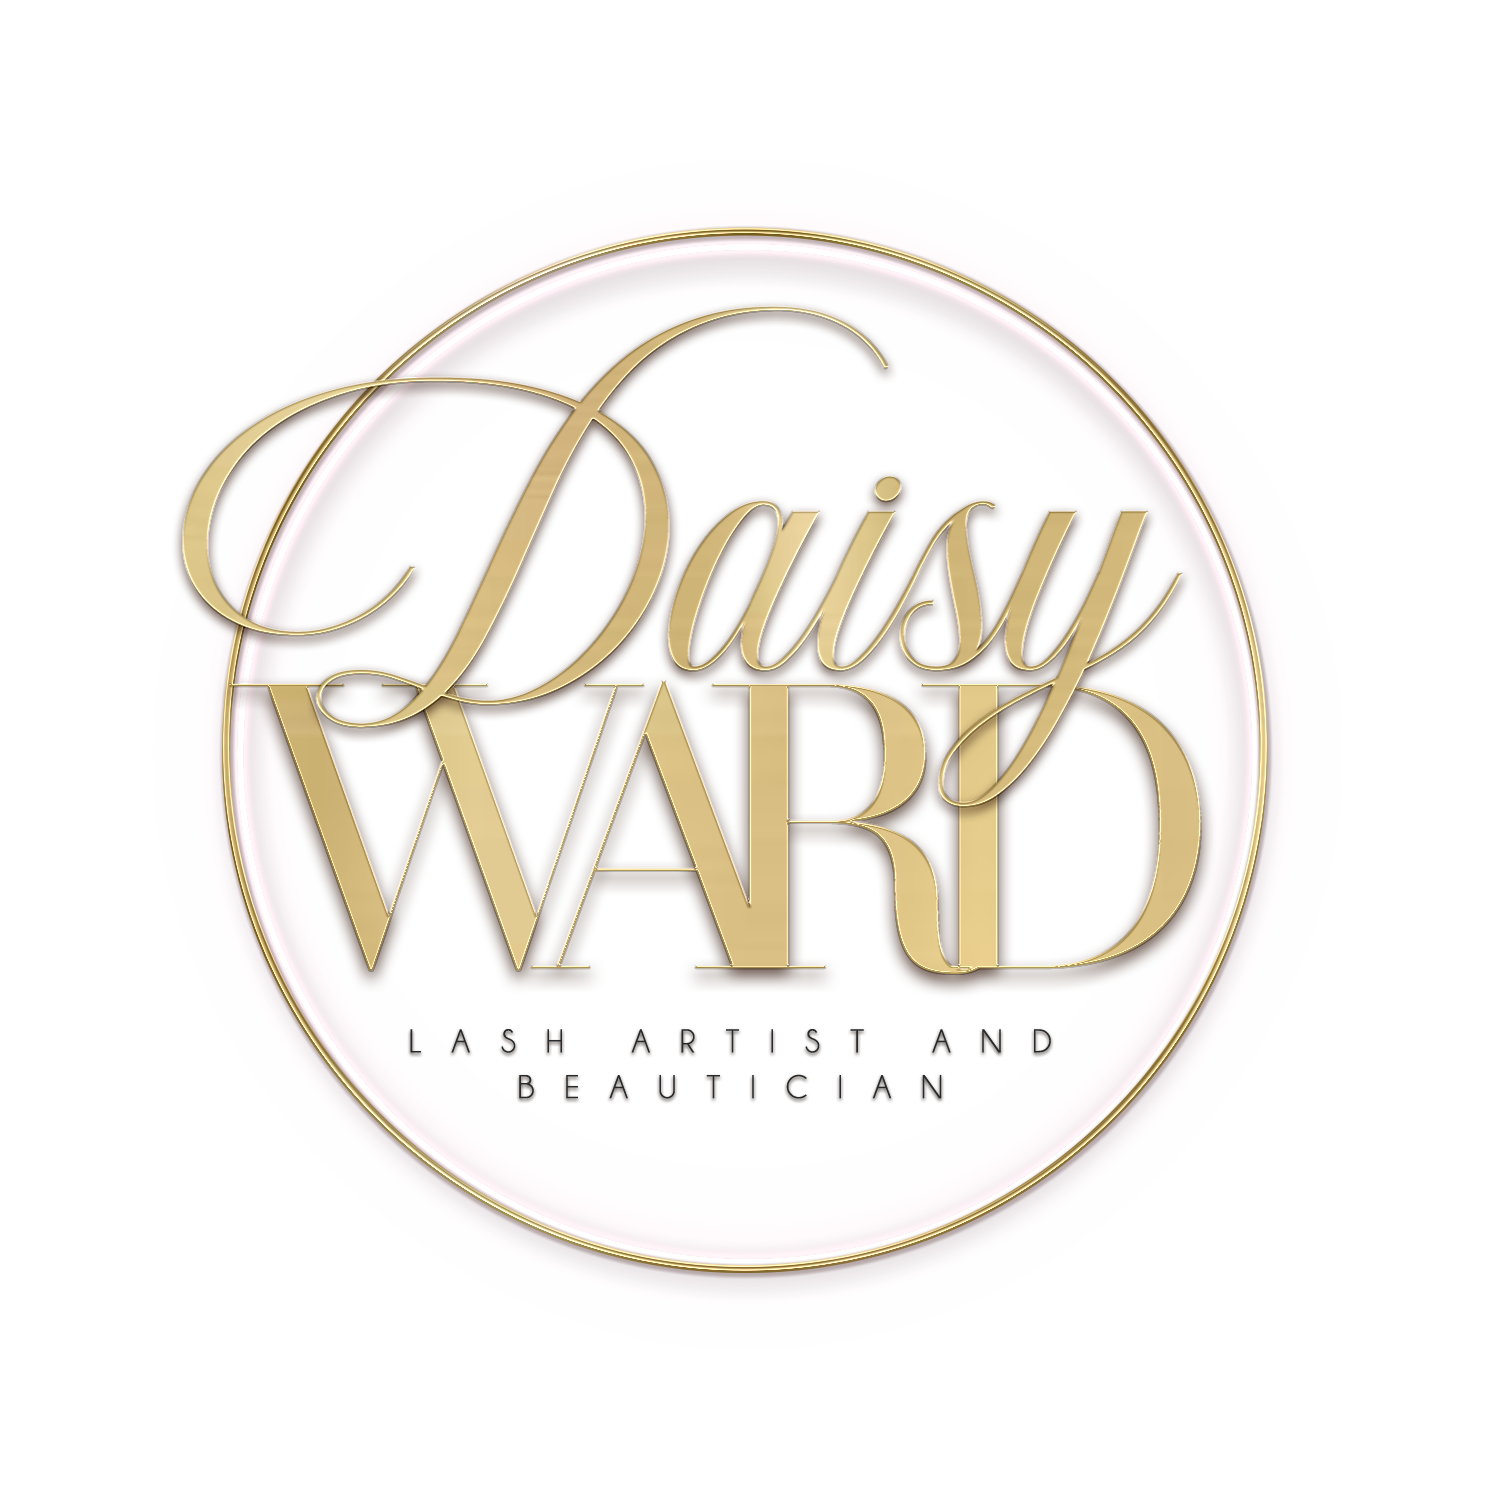 daisy ward Lashartist and beautician